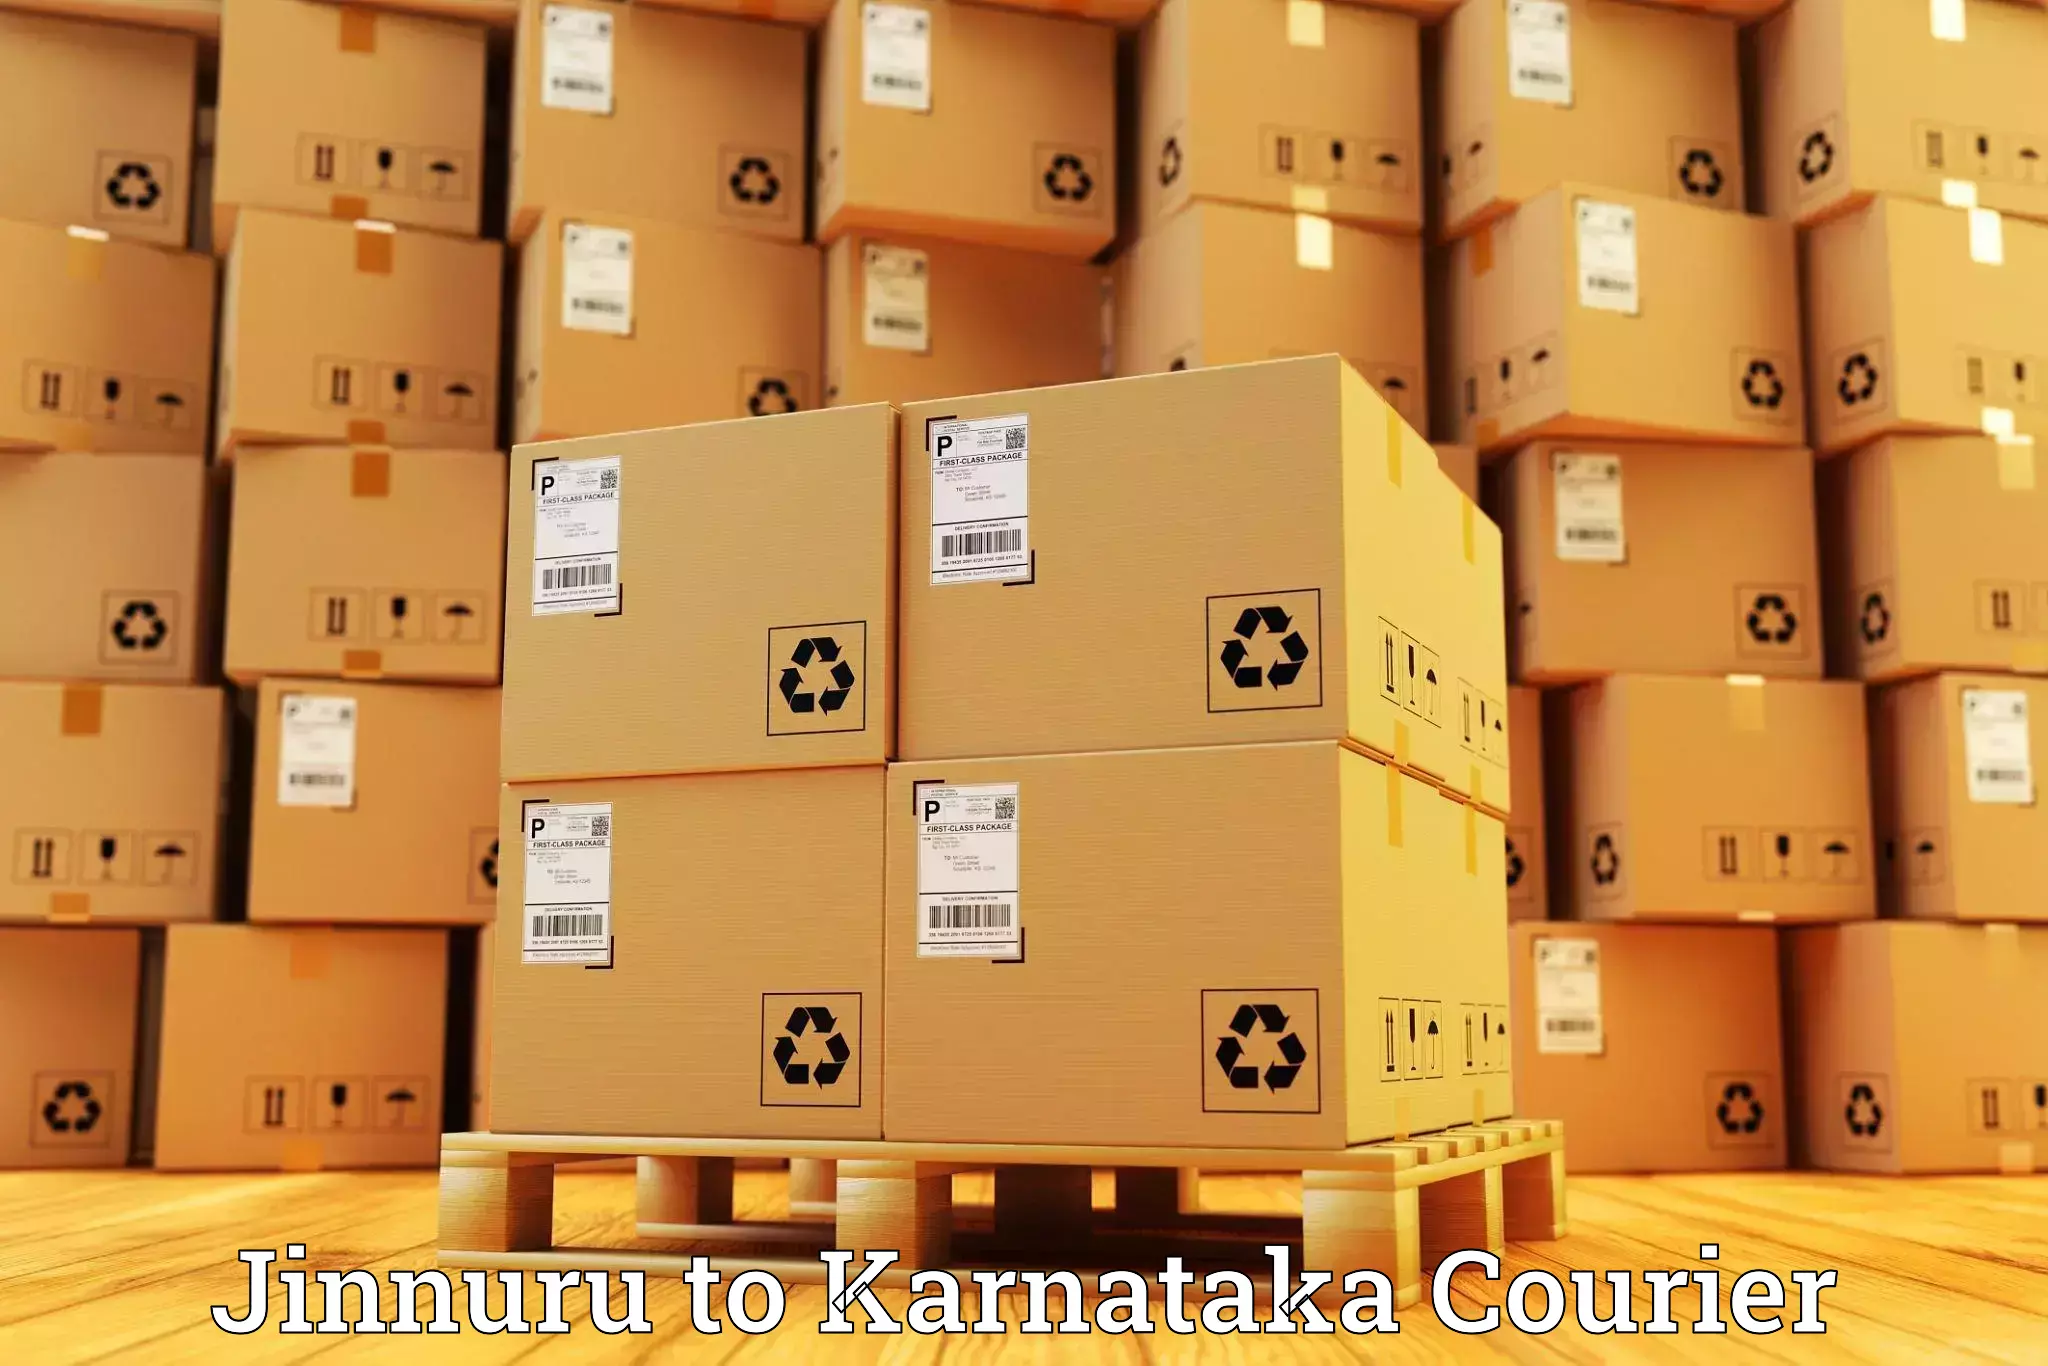 Multi-national courier services in Jinnuru to Toranagallu